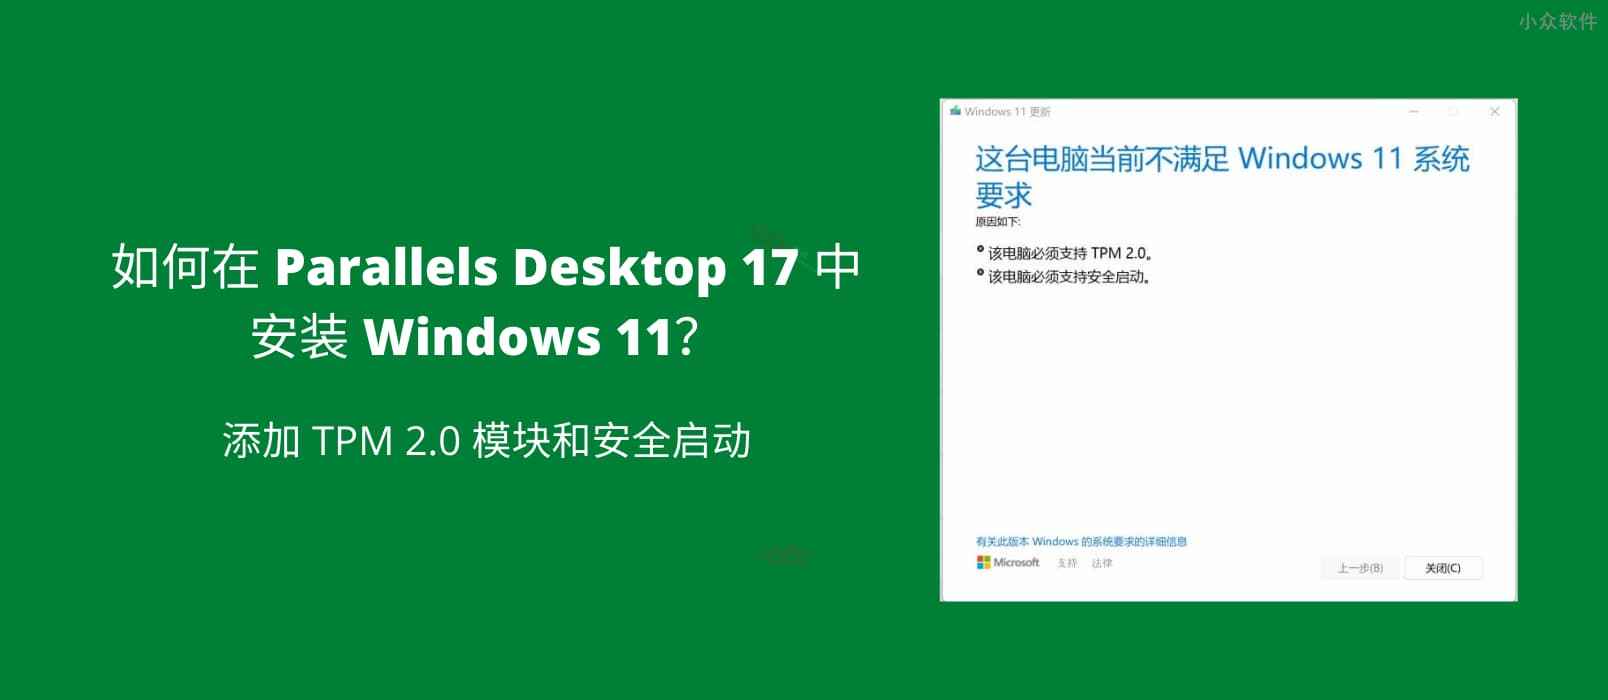 如何在 Parallels Desktop 17 中安装 Windows 11？ 添加 TPM 2.0 模块和安全启动